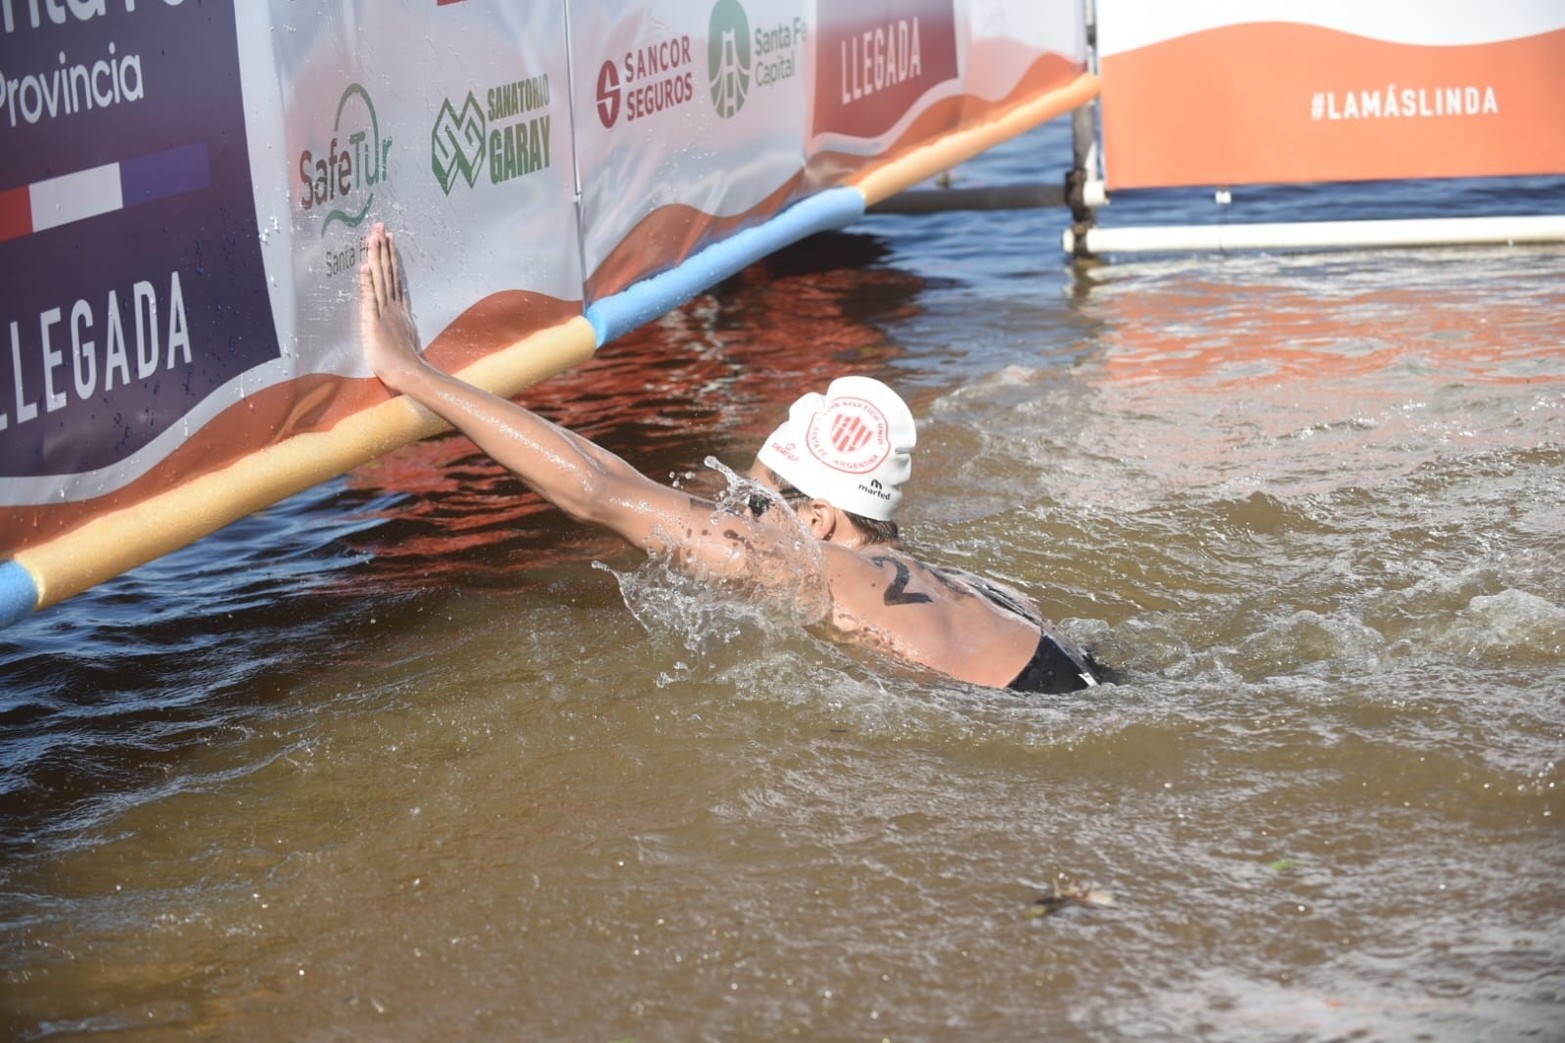 El argentino Matías Díaz Hernández ganó la 46a. edición de la Santa Fe - Coronda. La mejor entre las mujeres fue la santafesina Erika Yenssen. El nadador paralímpico Theo Curin cumplió su objetivo al arribar a Coronda.